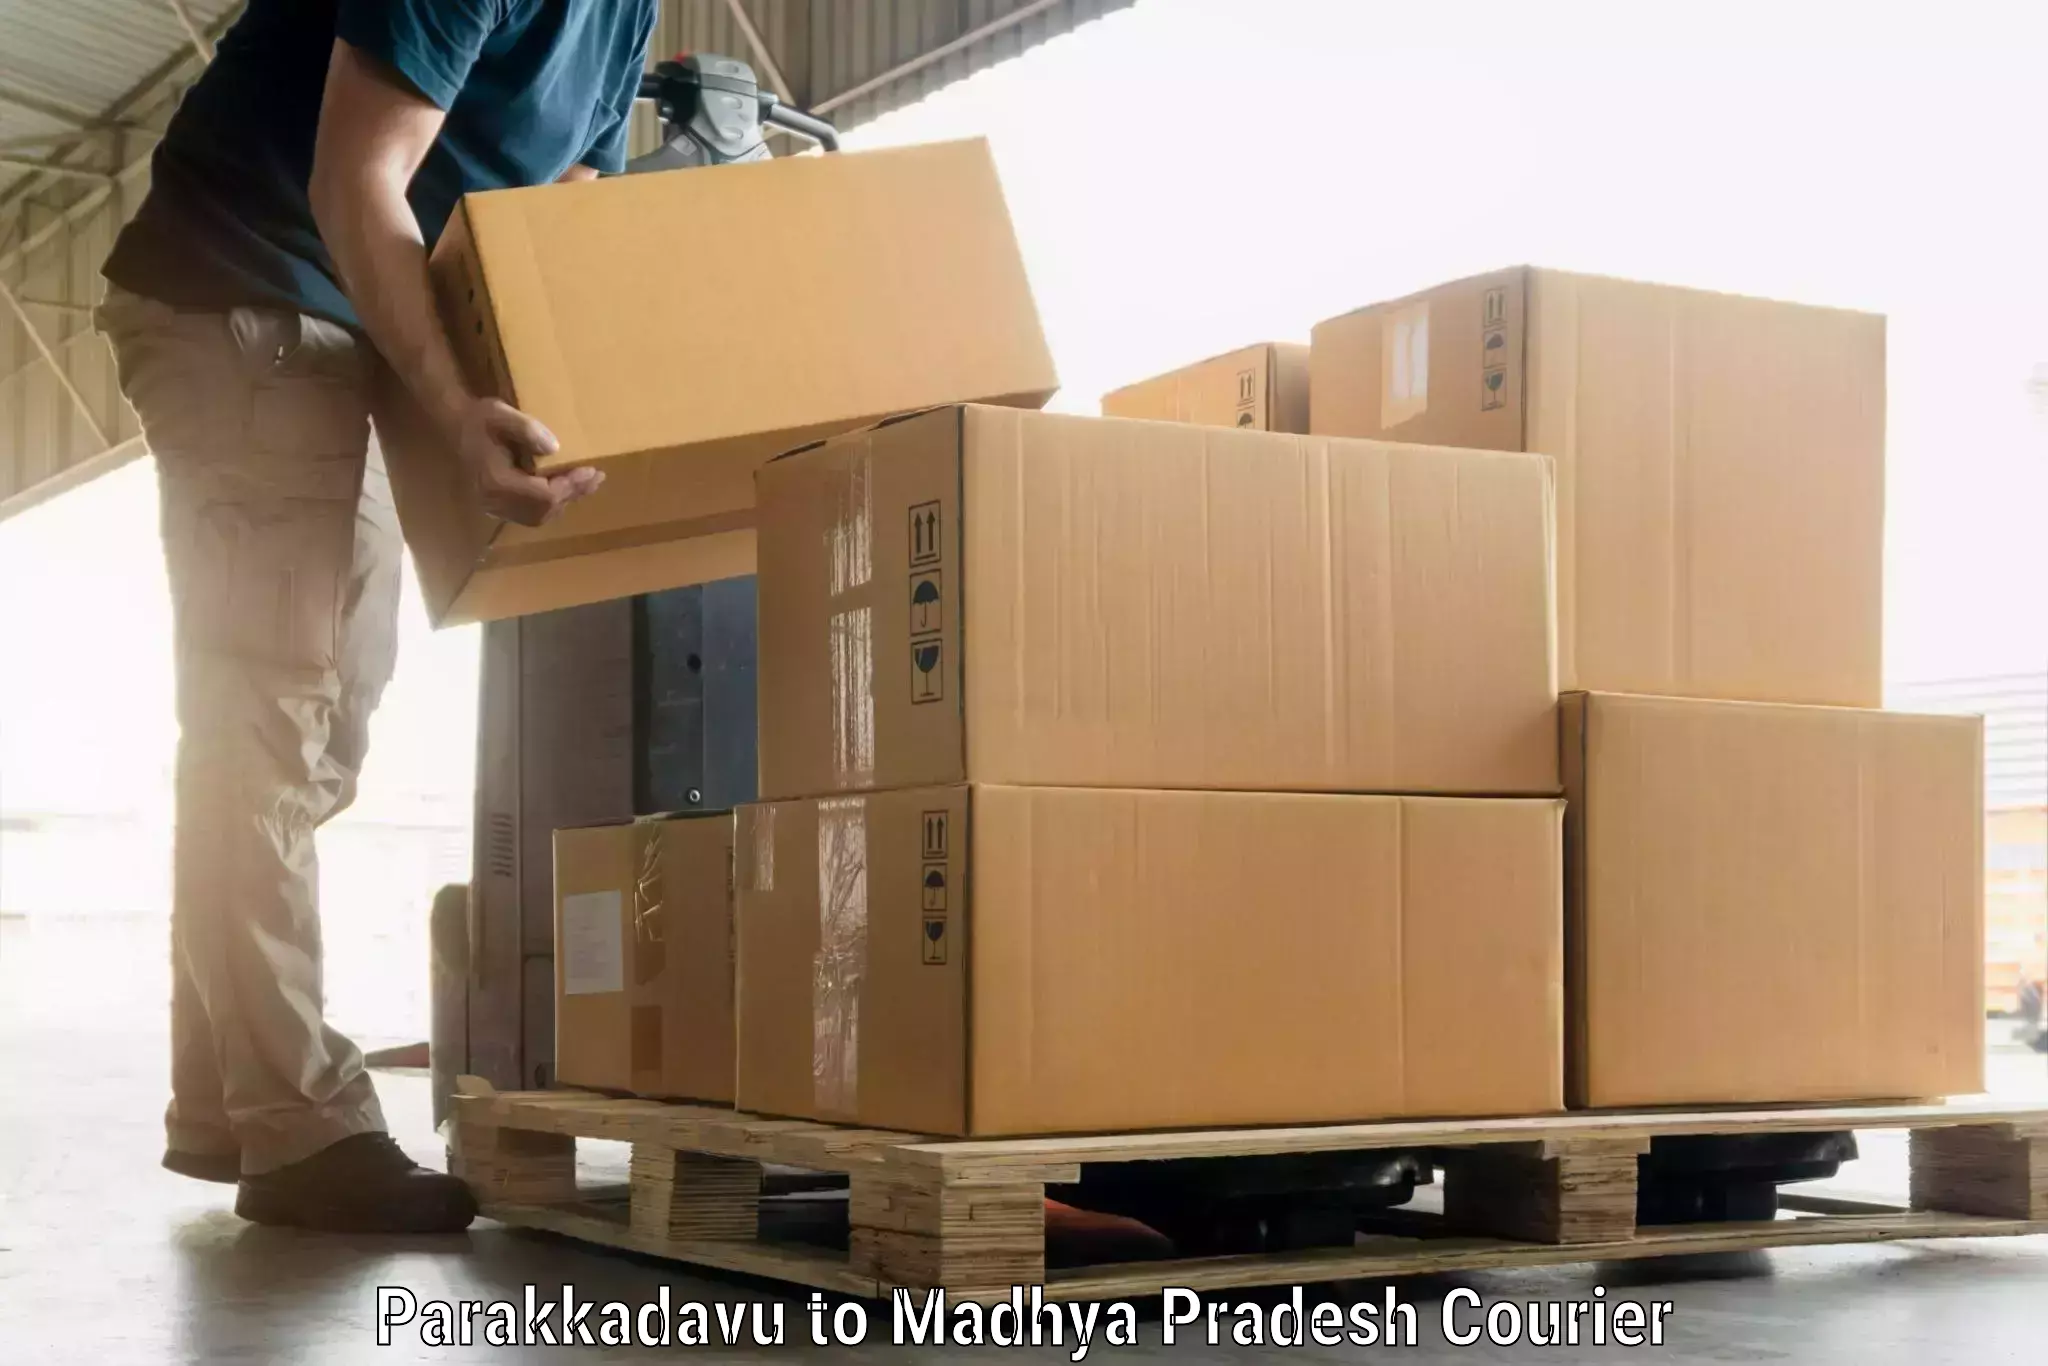 Doorstep luggage pickup Parakkadavu to Madhya Pradesh